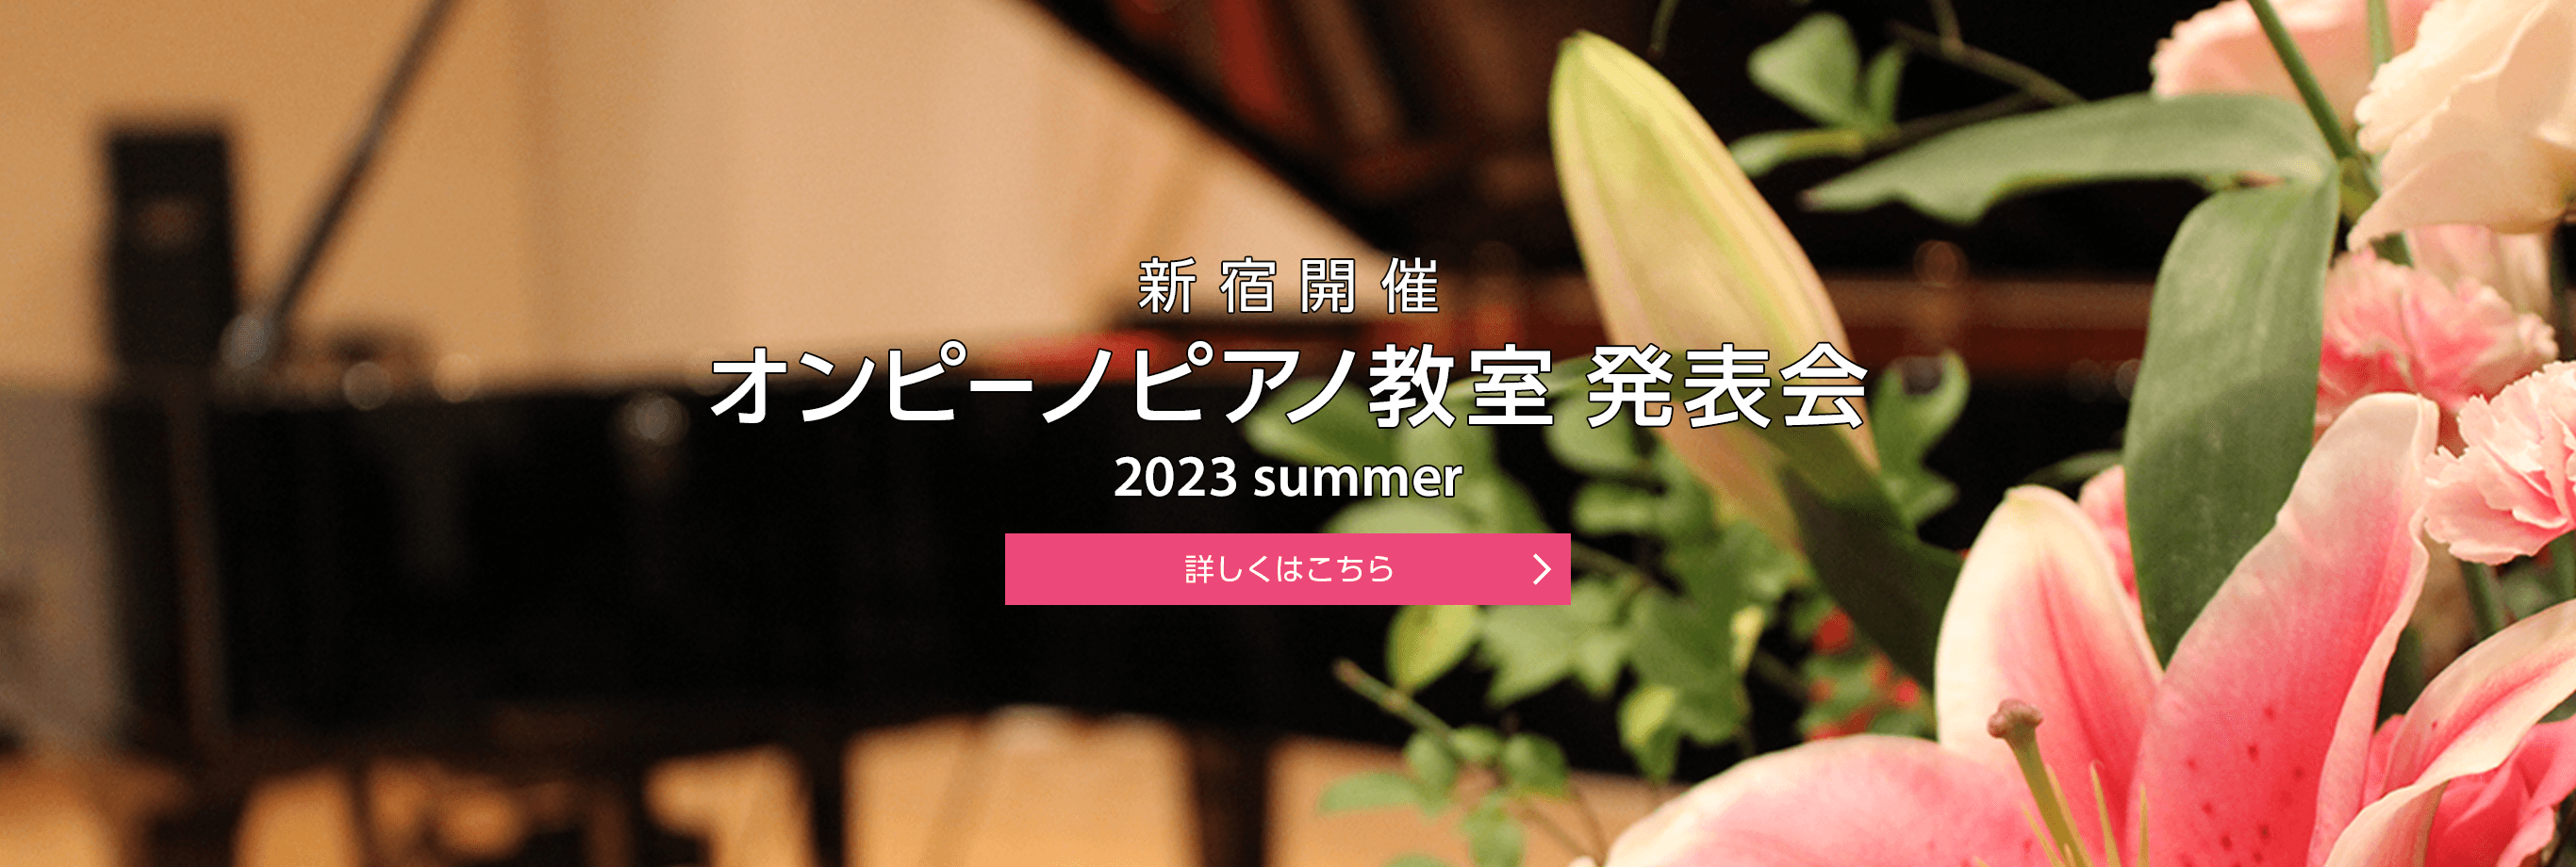 新宿開催 オンピーノピアノ教室 発表会 2023 winter 詳しくはこちら